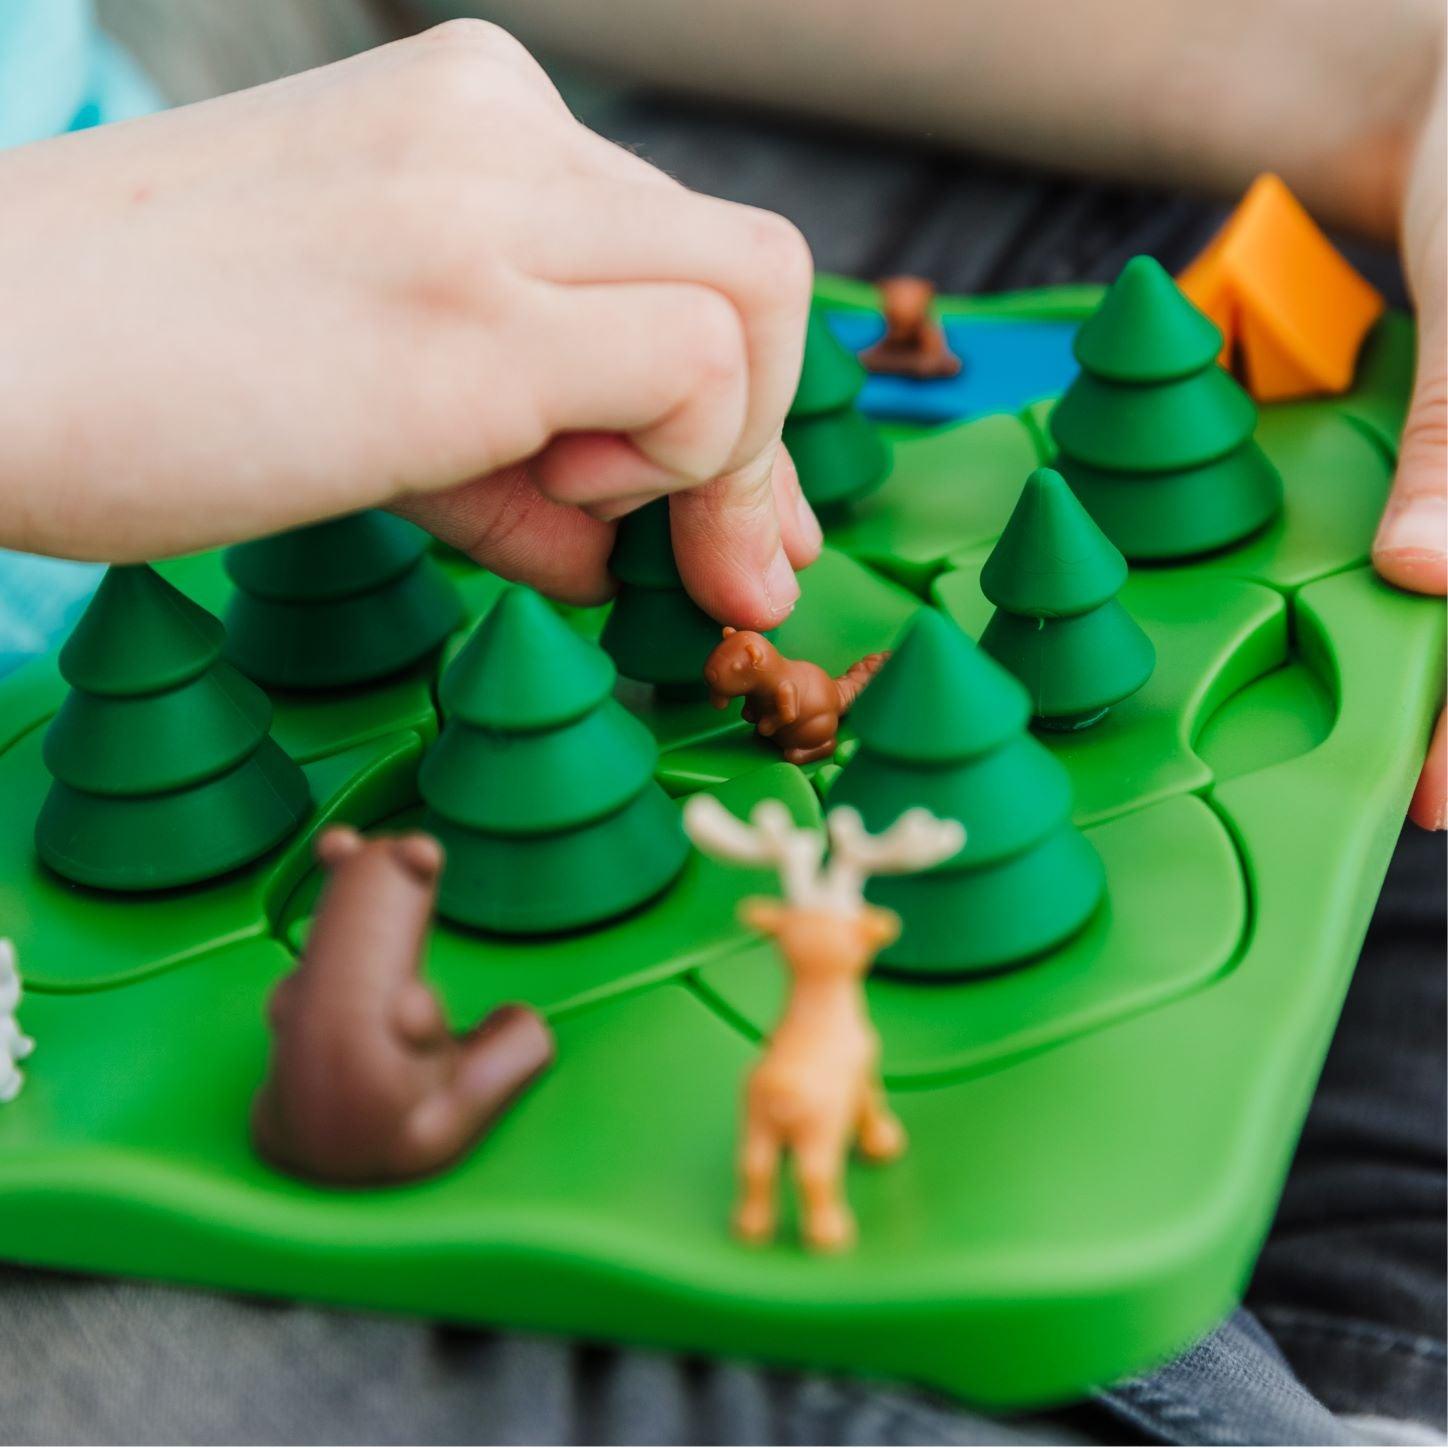 IUVI játékok: A társasjátékok medve az erdő intelligens játékaiban